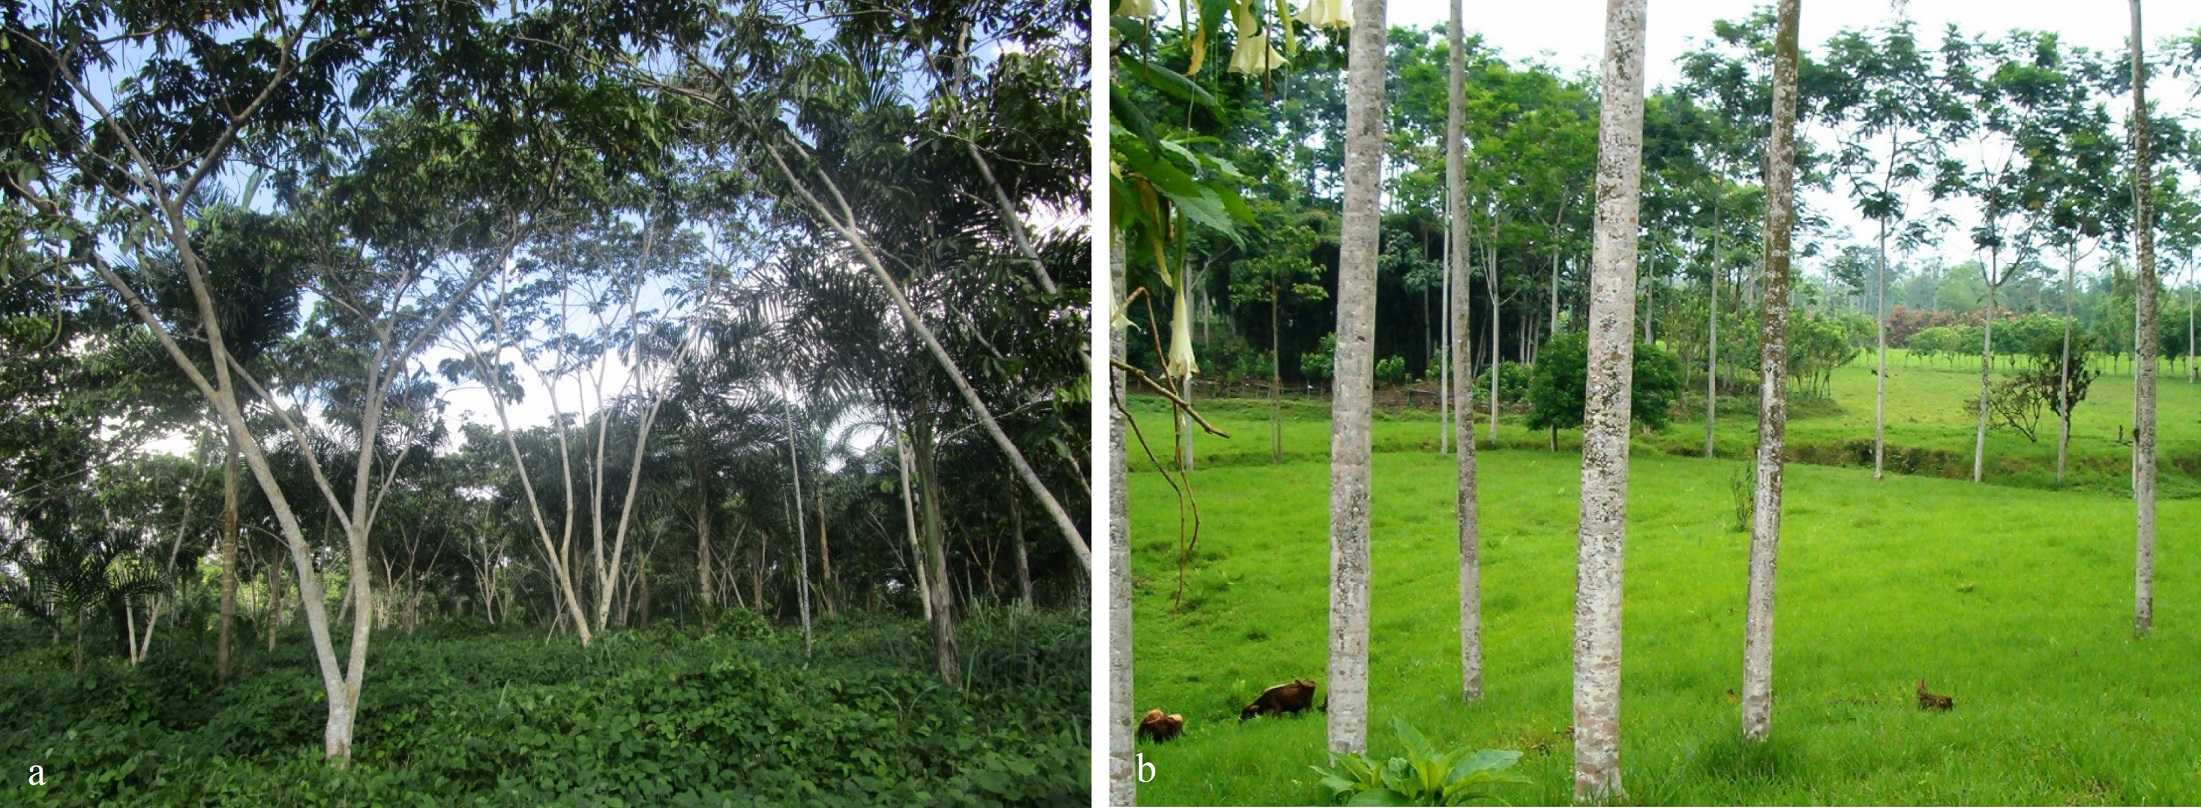 Sistemas silvopastoriles: a. Perú-Yurimaguas, b. Ecuador-La Maná.